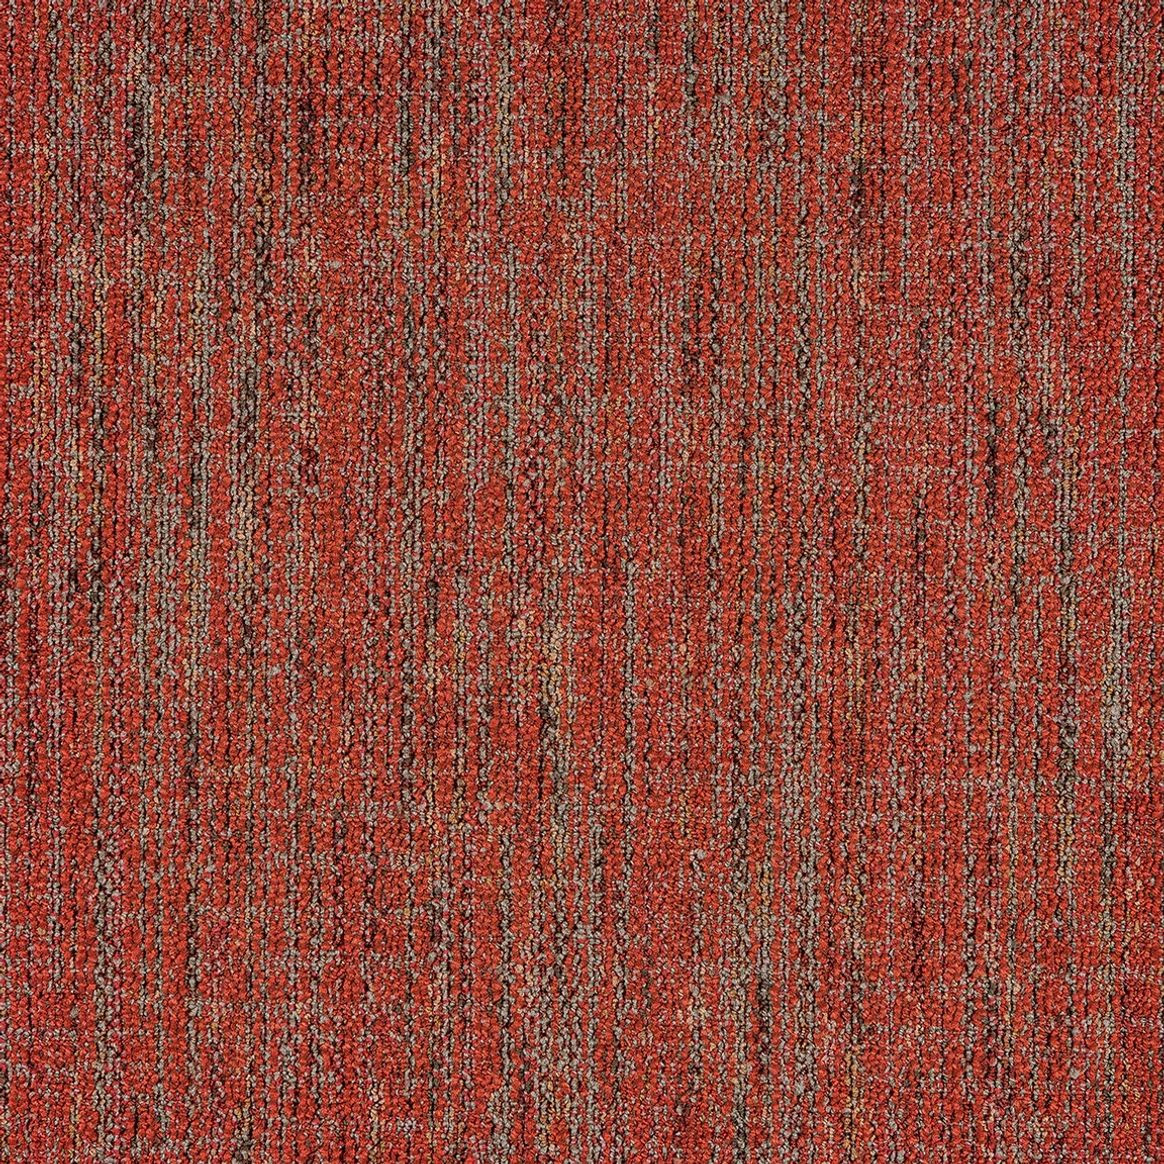 Mannington Commercial Precision Carpet Tile Binomial 24" x 24" Premium